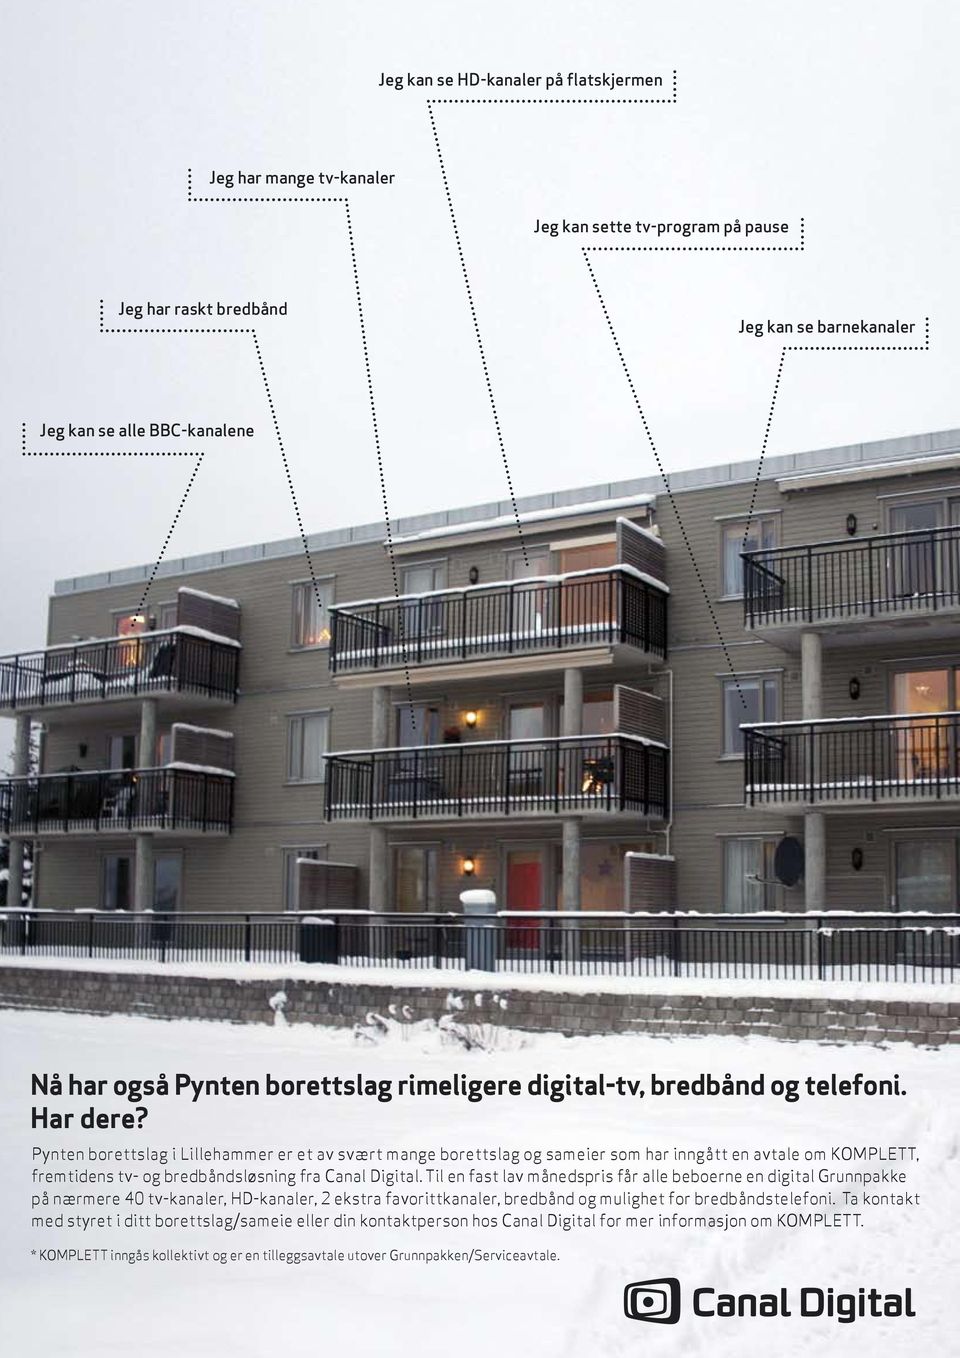 Pynten borettslag i Lillehammer er et av svært mange borettslag og sameier som har inngått en avtale om KOMPLETT, fremtidens tv- og bredbåndsløsning fra Canal Digital.